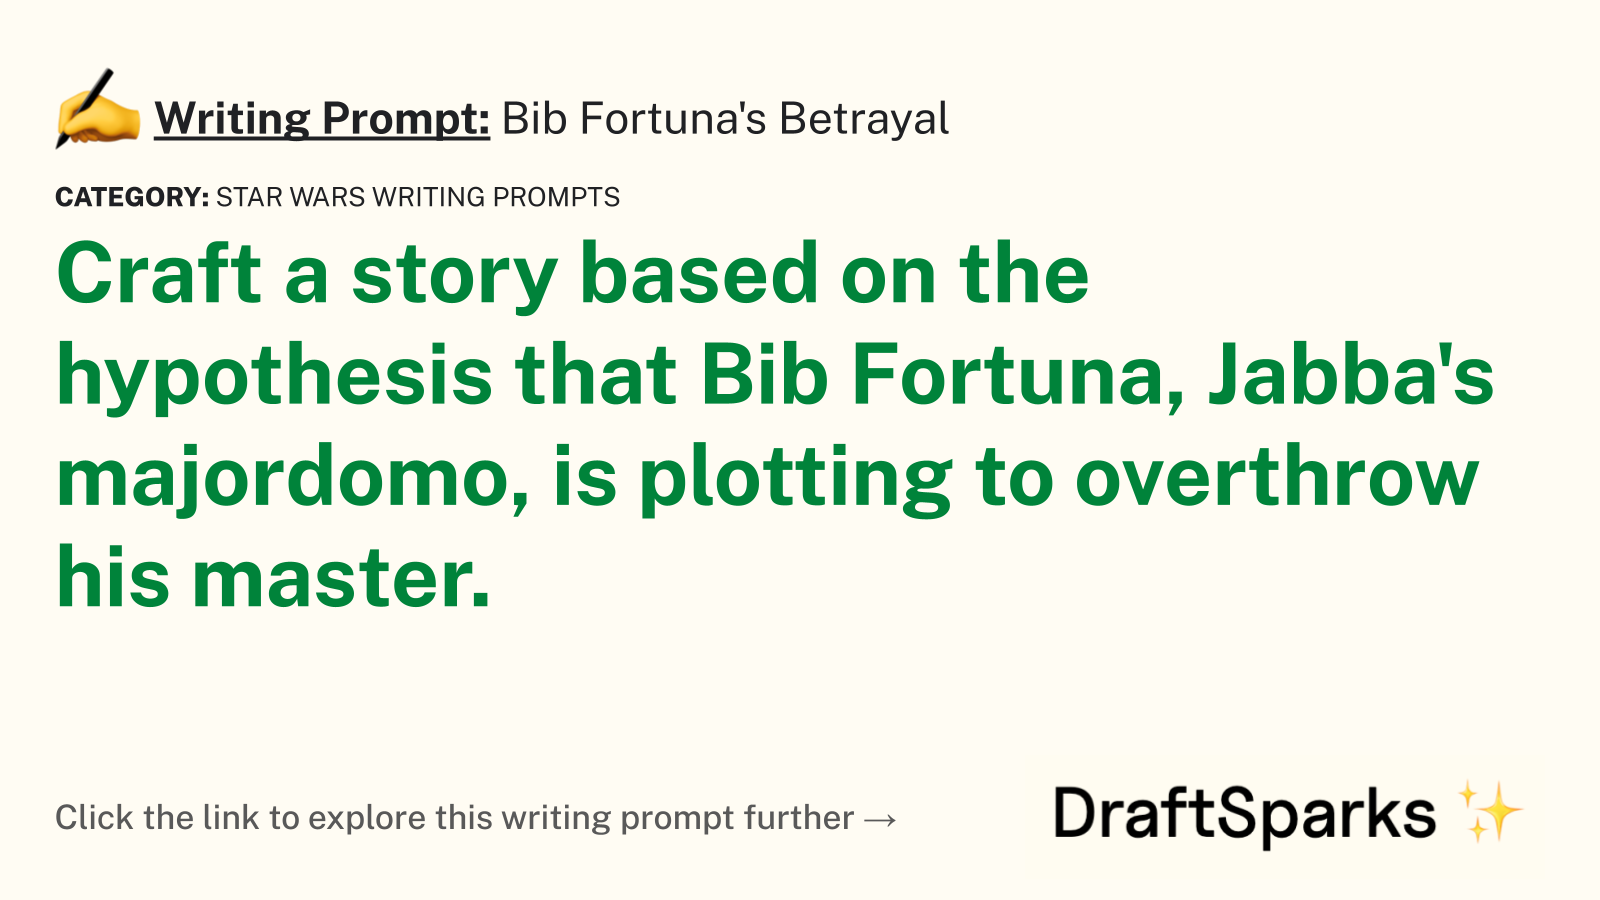 Bib Fortuna’s Betrayal